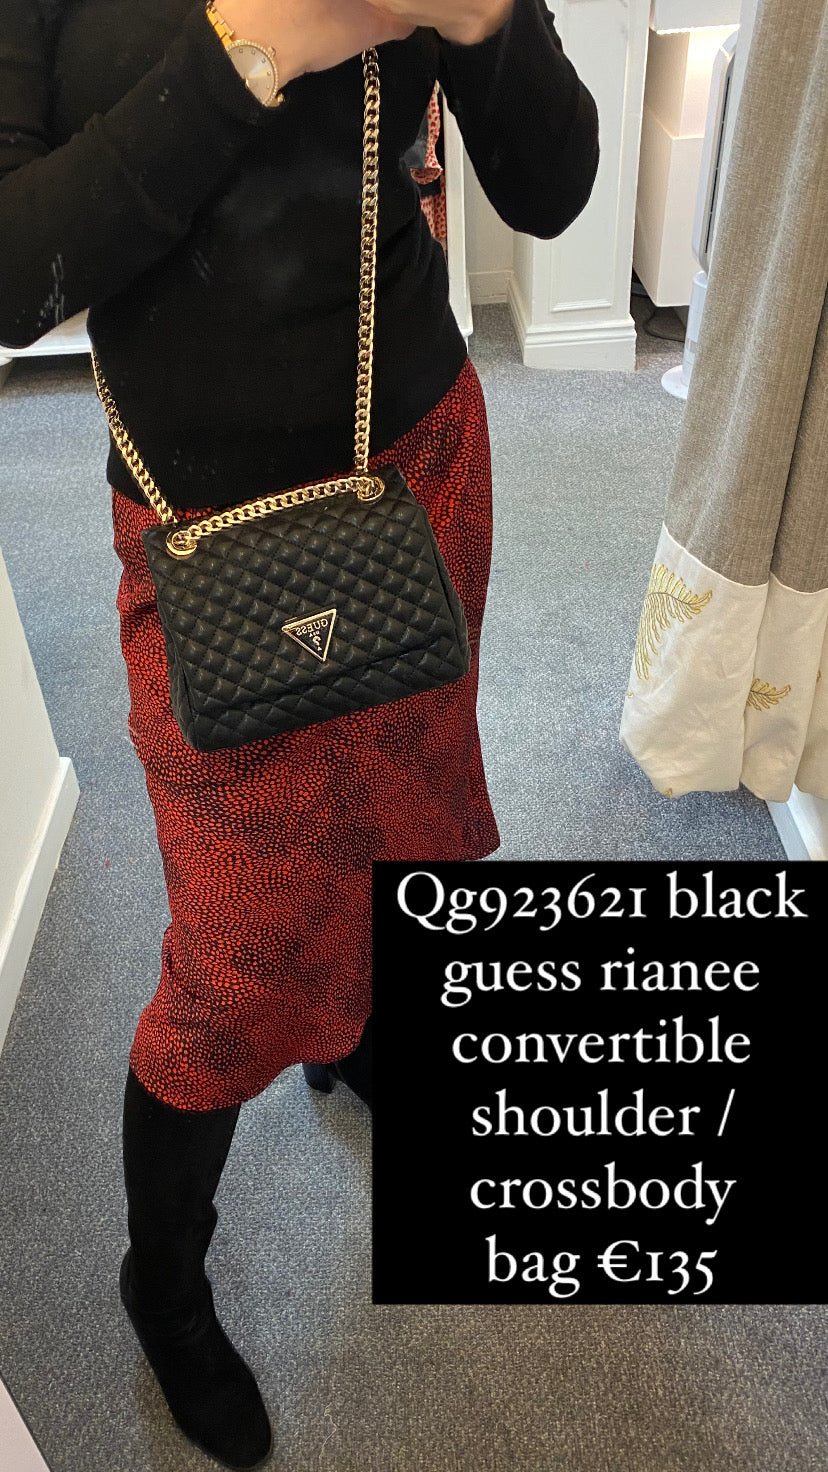 Qg923621 black guess rianee convertible shoulder / crossbody bag